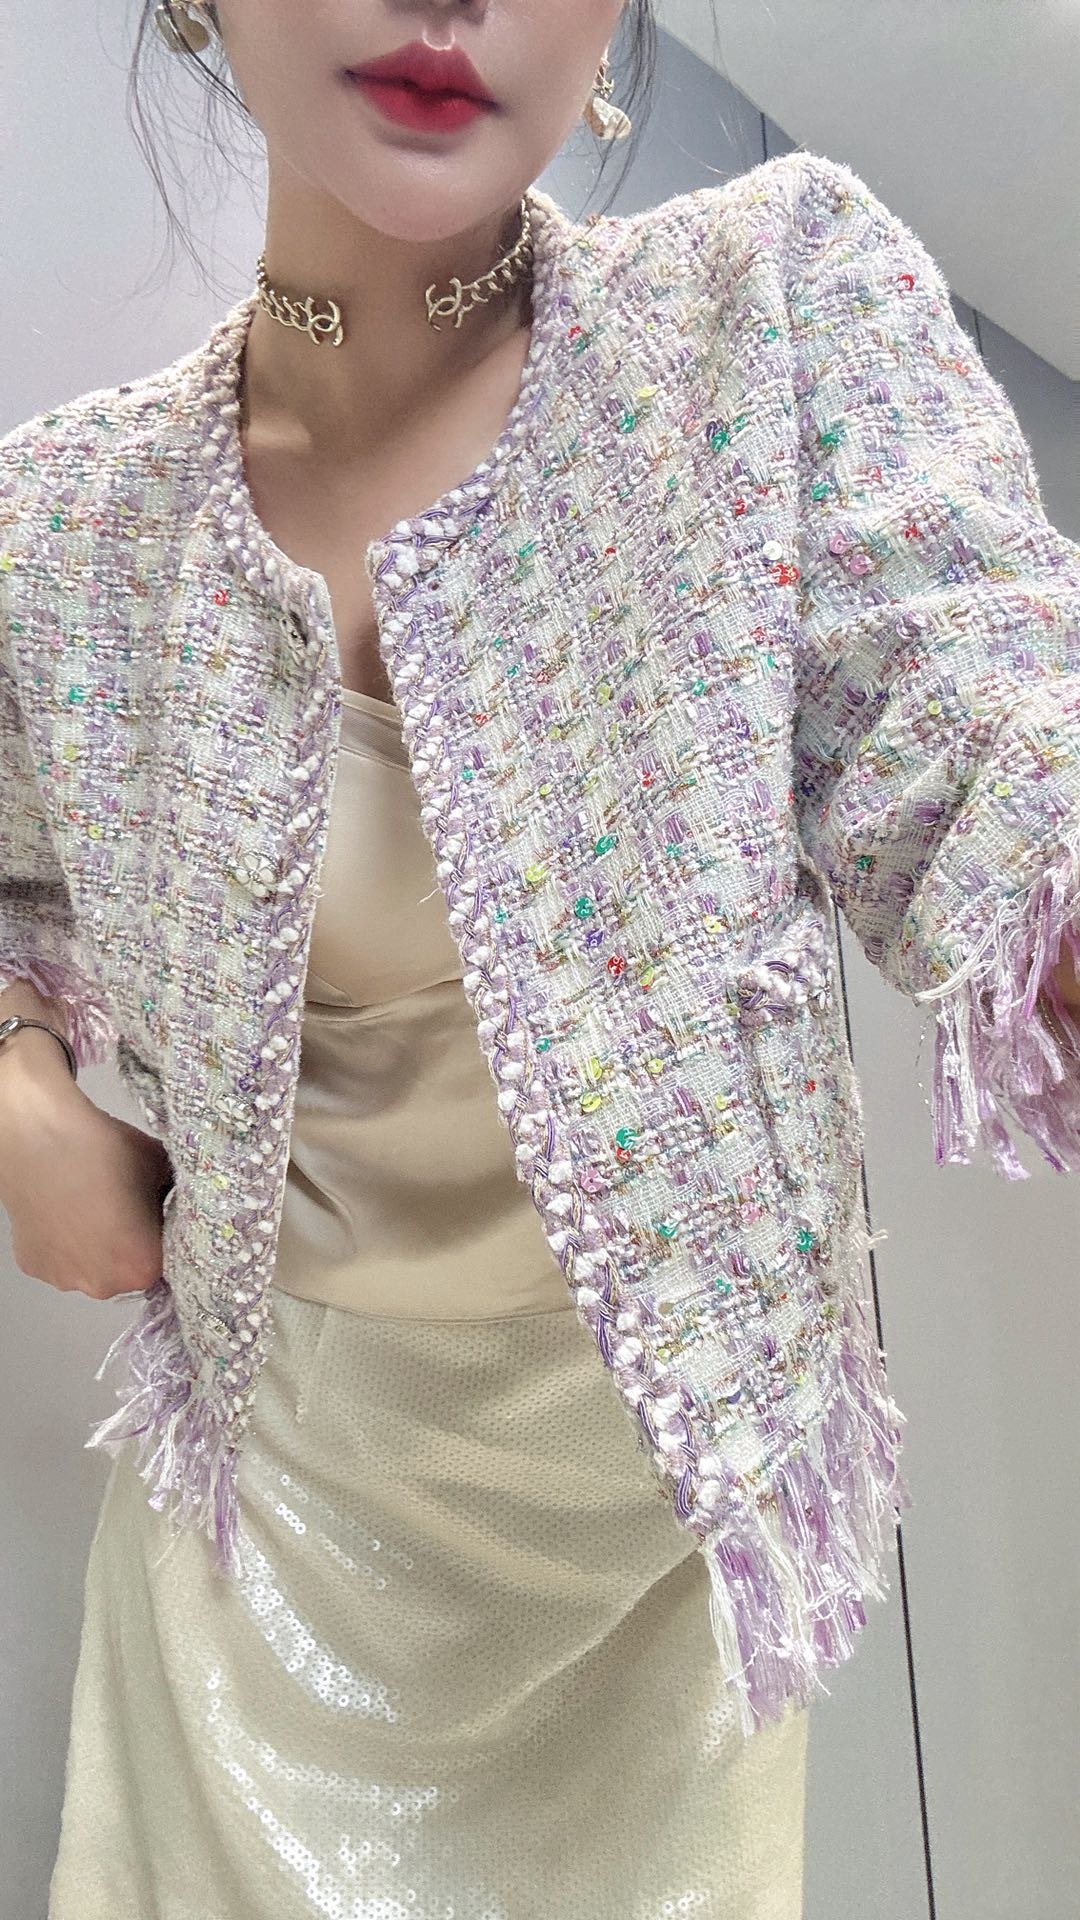 新款上新????????CC春夏新款流苏外套，超美腻的淡紫色，看了都觉得心情好，定制编织面料彩色珠片混合亮丝线，精致小细节，一色三码 SML